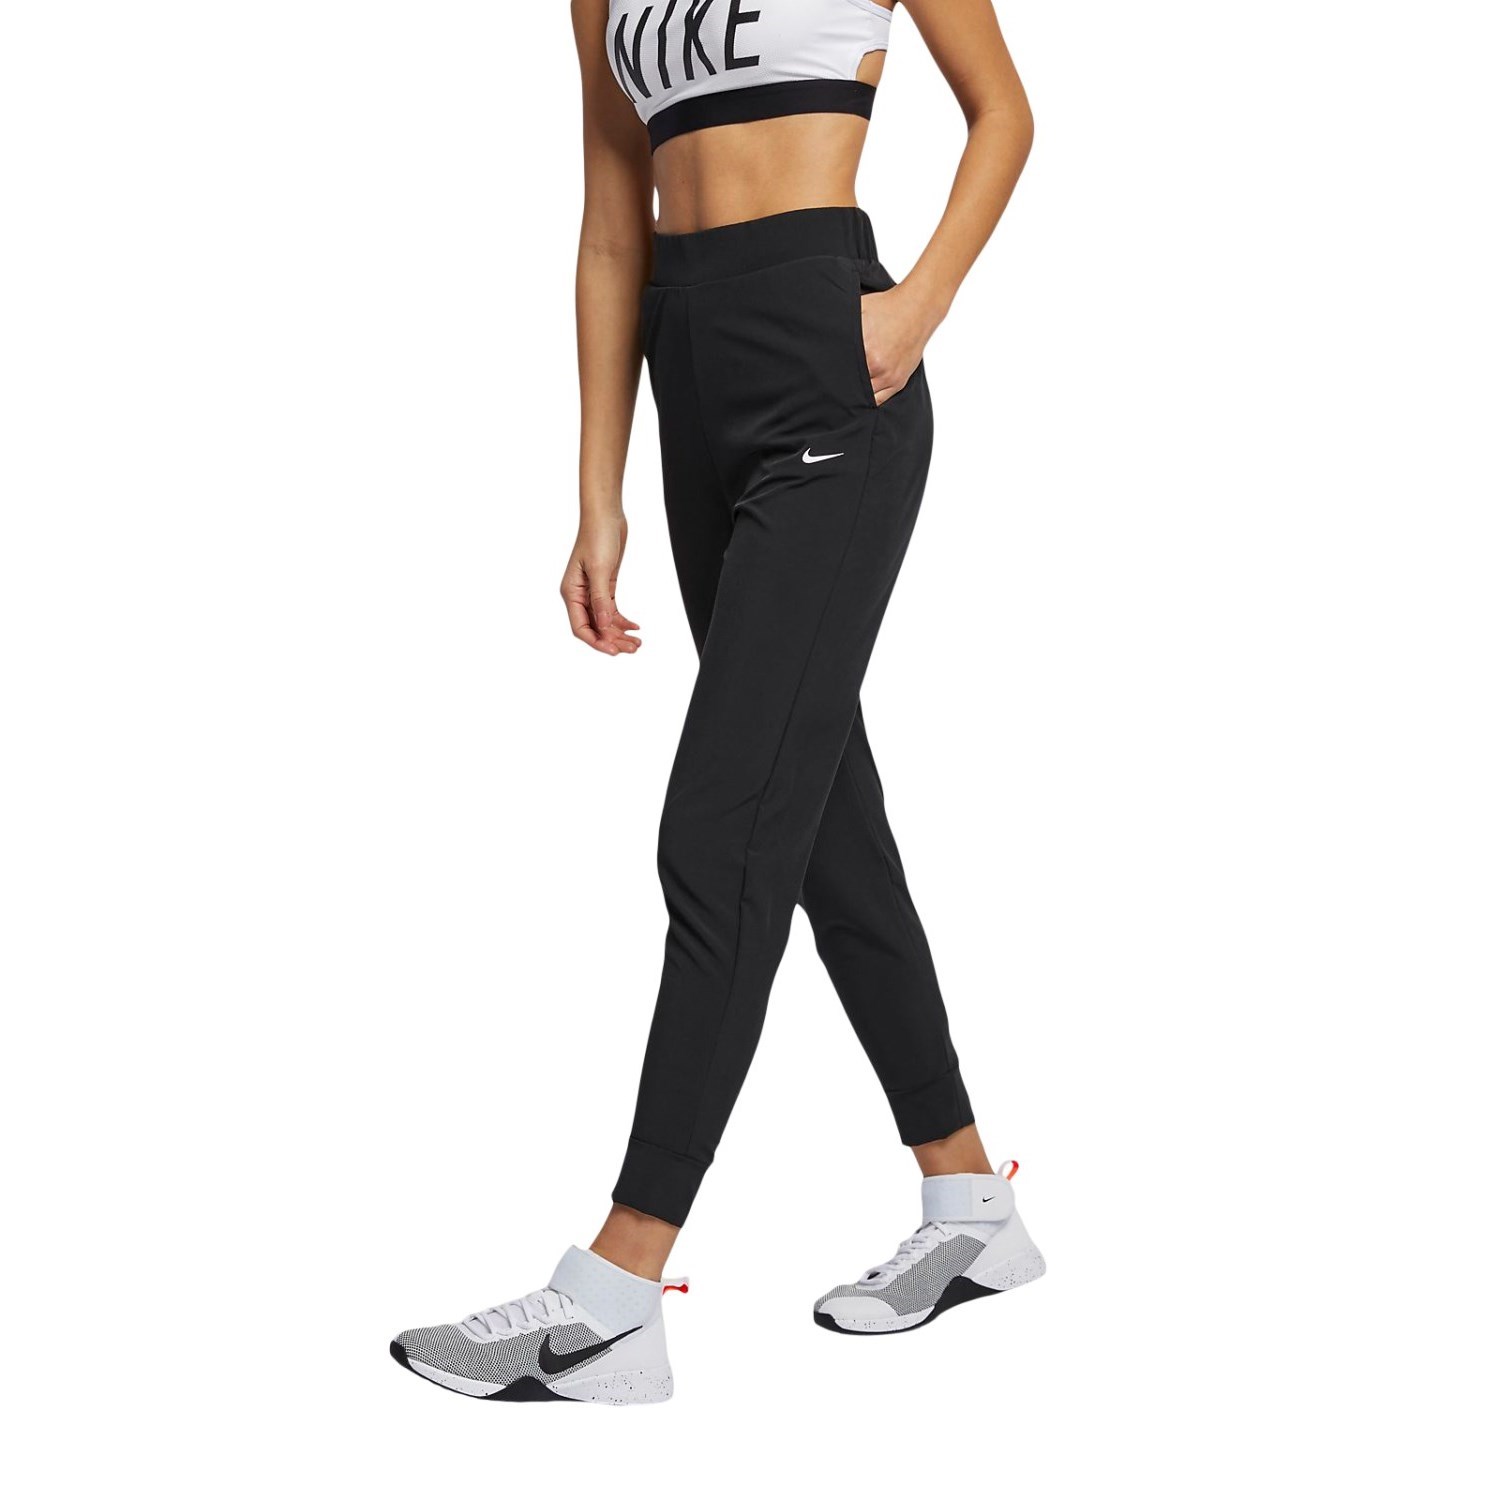 Women's Nike Workout Suit, Nike sportswear/Training/Gym Wear/Bra Top &  Leggings | eBay